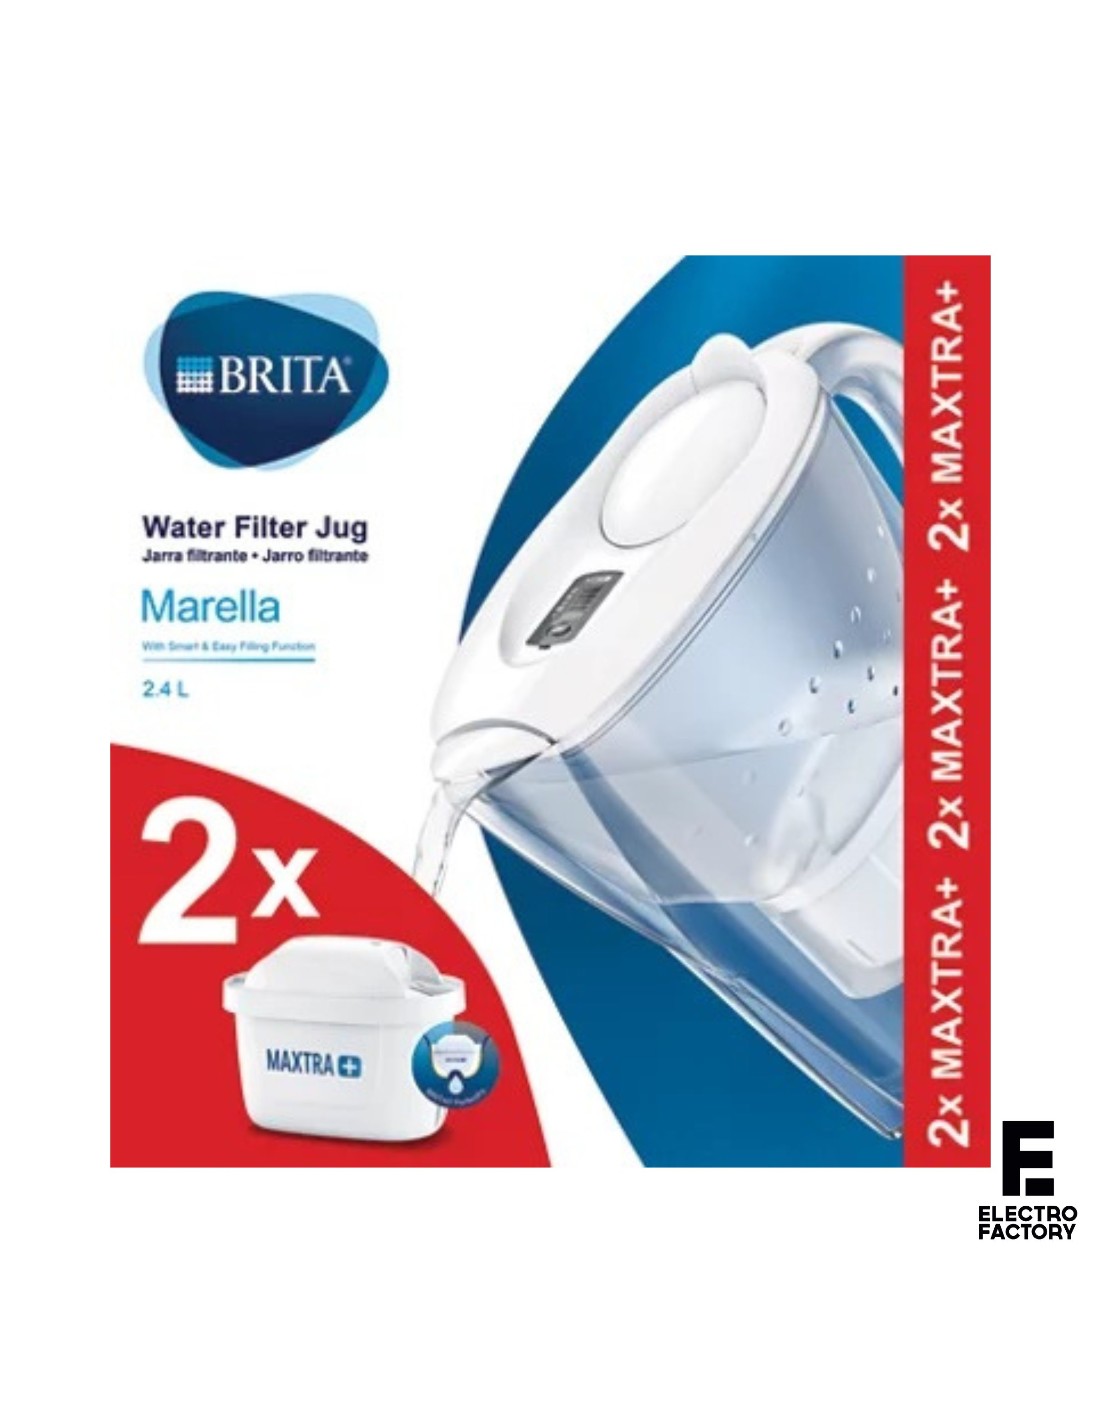 Comprar Jarra Agua Brita Marella Blanca + 2 barata con envío rápido